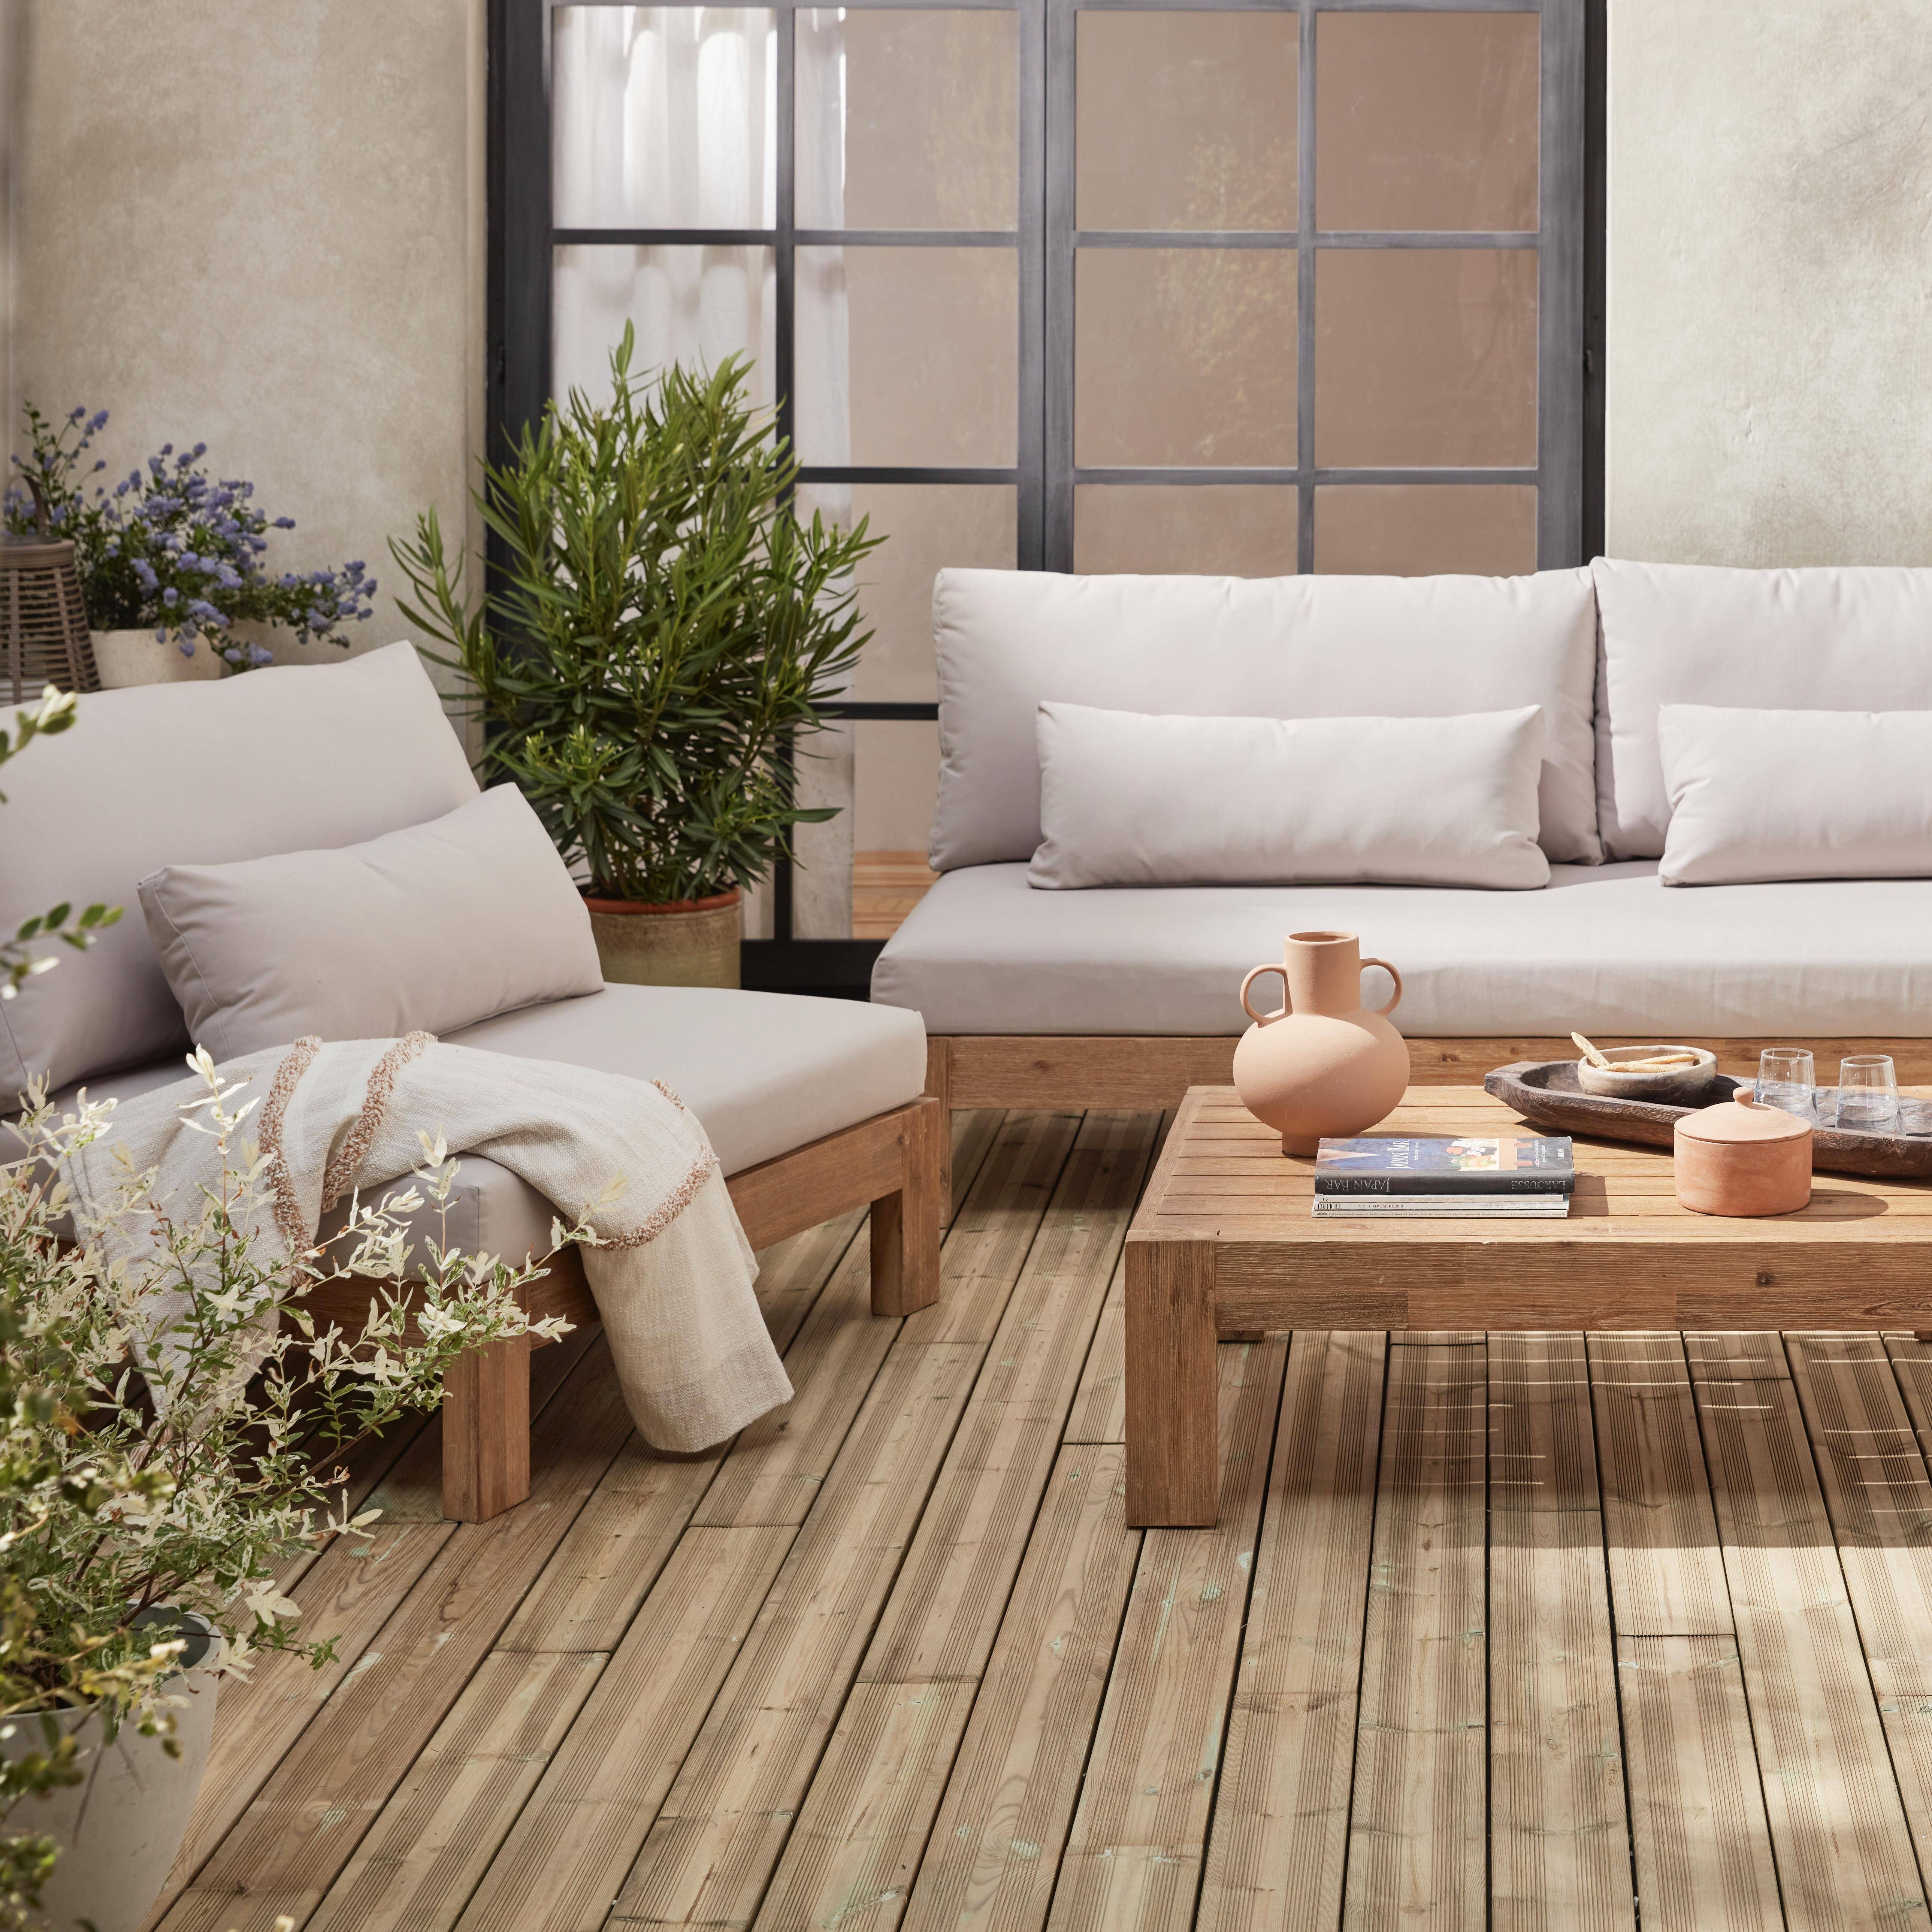  Conjunto de móveis de jardim XXL em madeira escovada, efeito branqueado - BAHIA - almofadas bege, ultra confortáveis, 5 a 7 lugares garden-lounge-xxl-wood-brush-white-bahia-cushions-beige Photo2